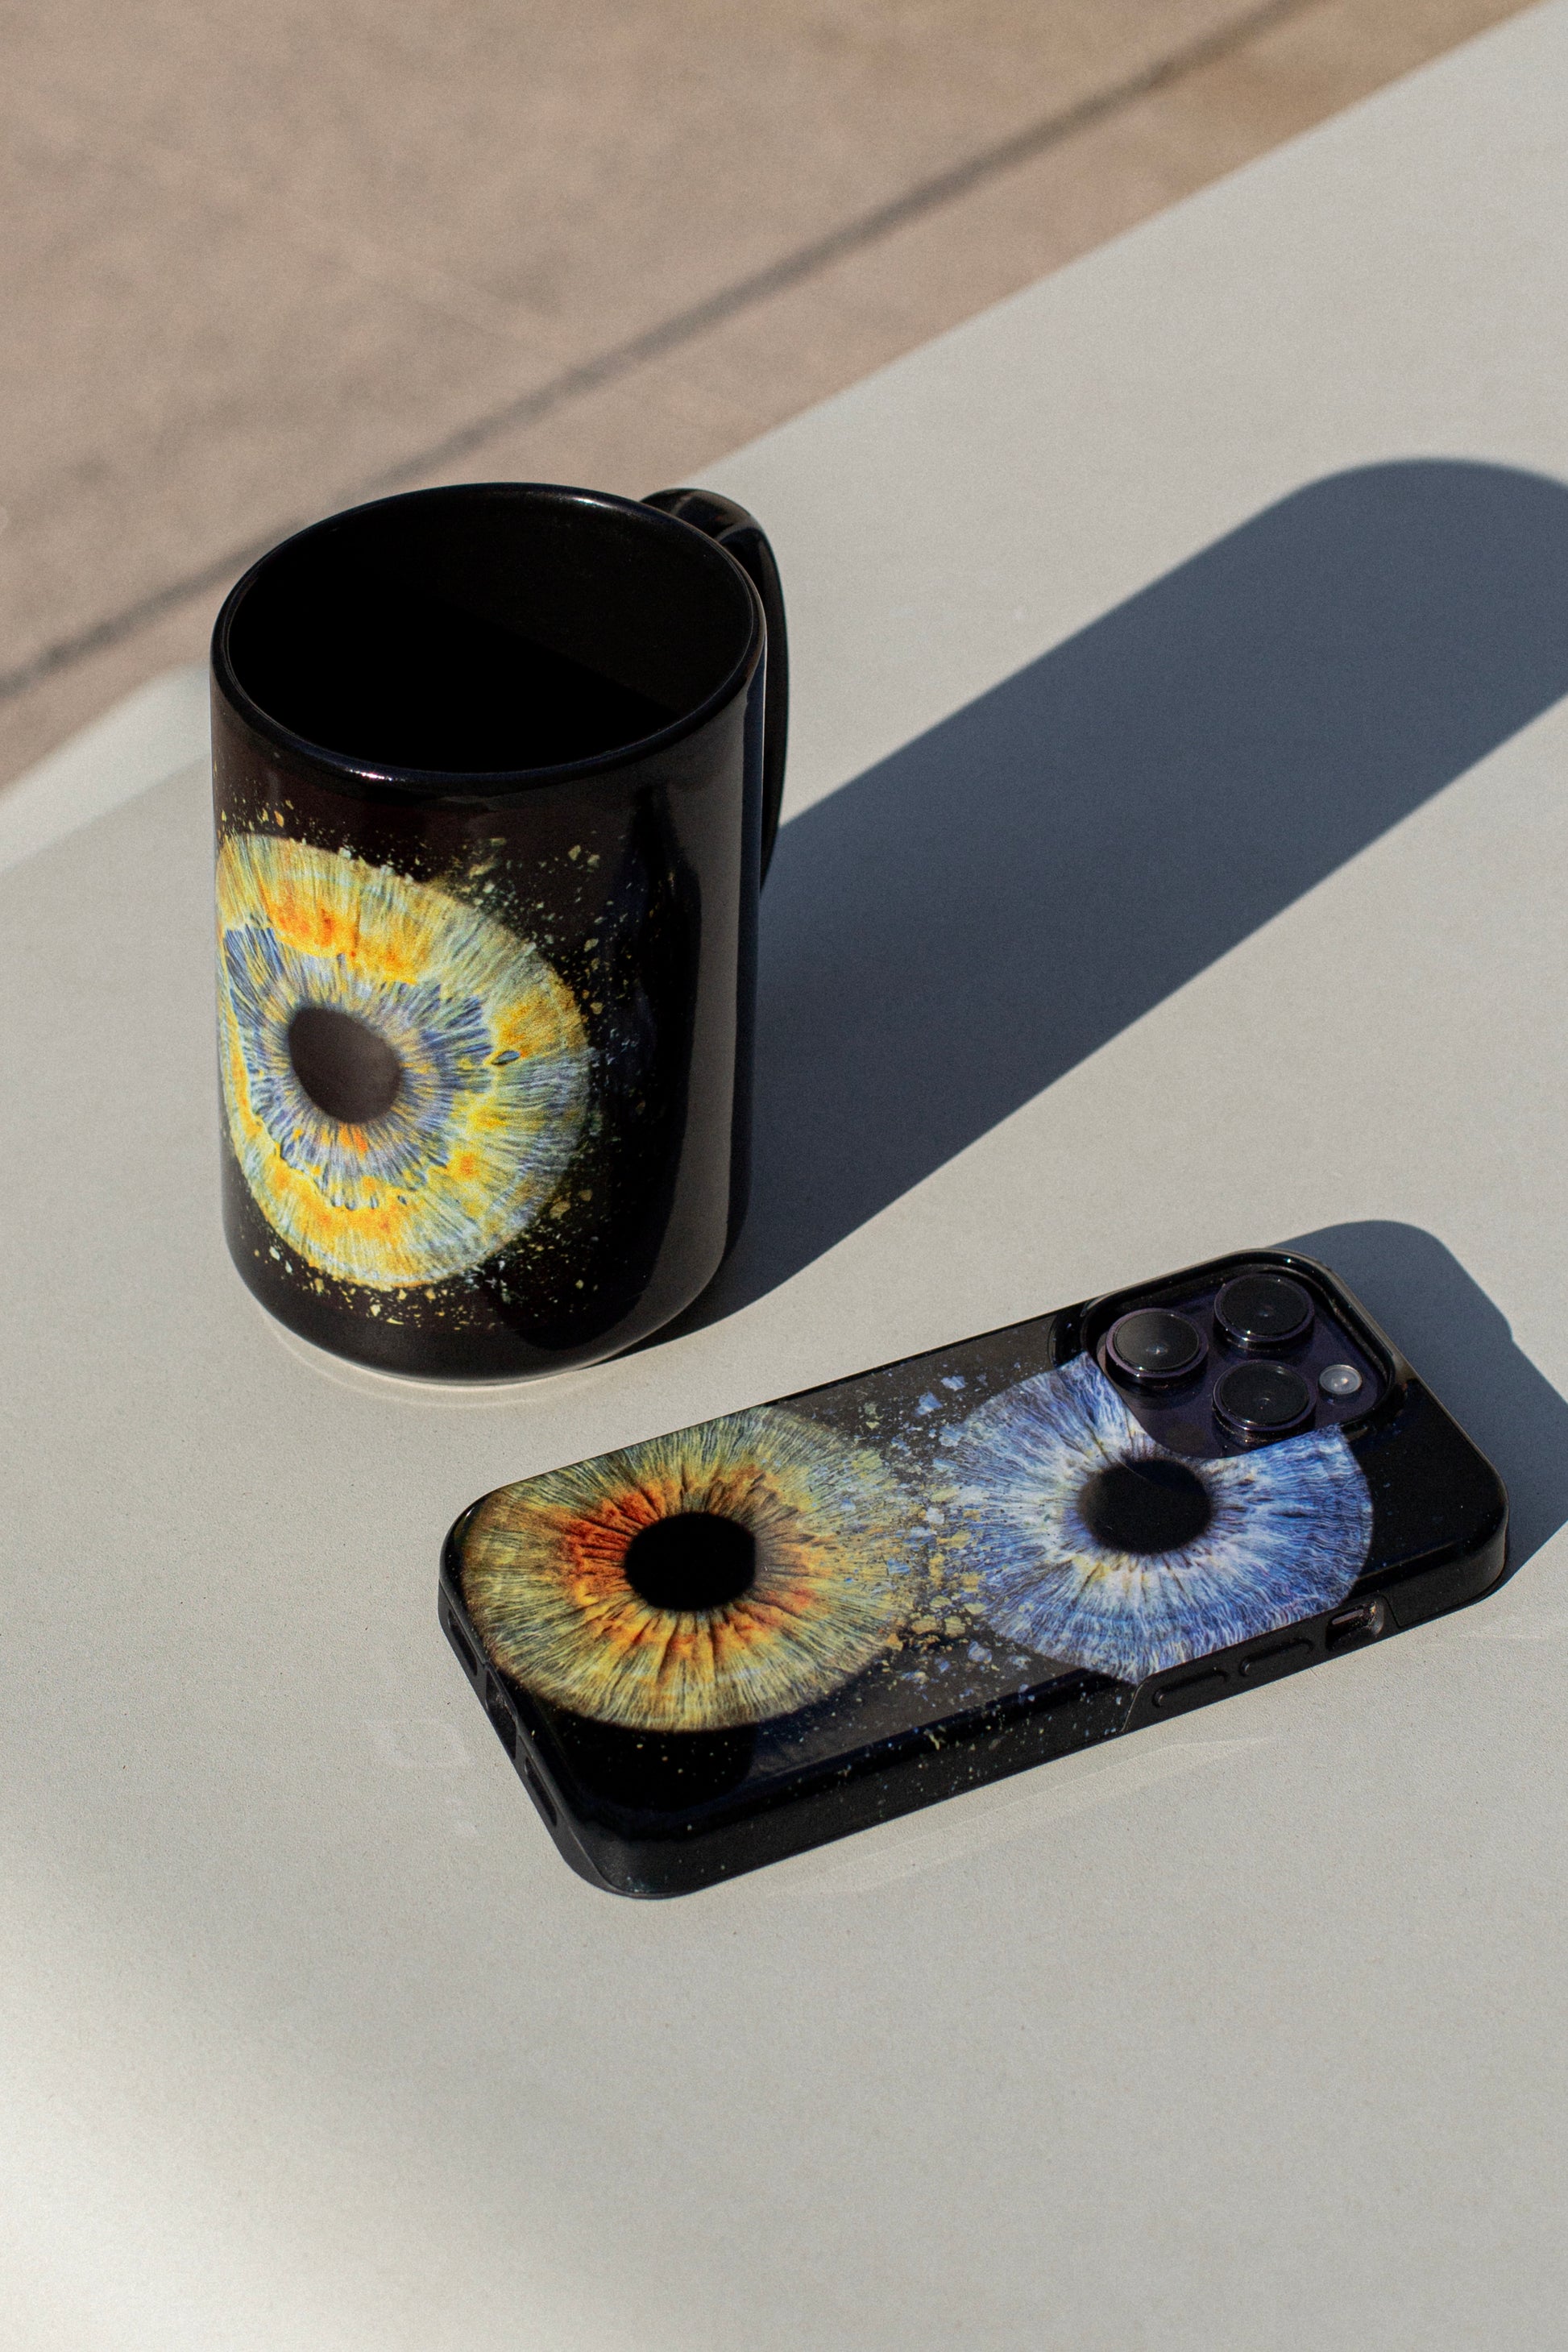 Iris Coffee Mug and Iris Phone Case